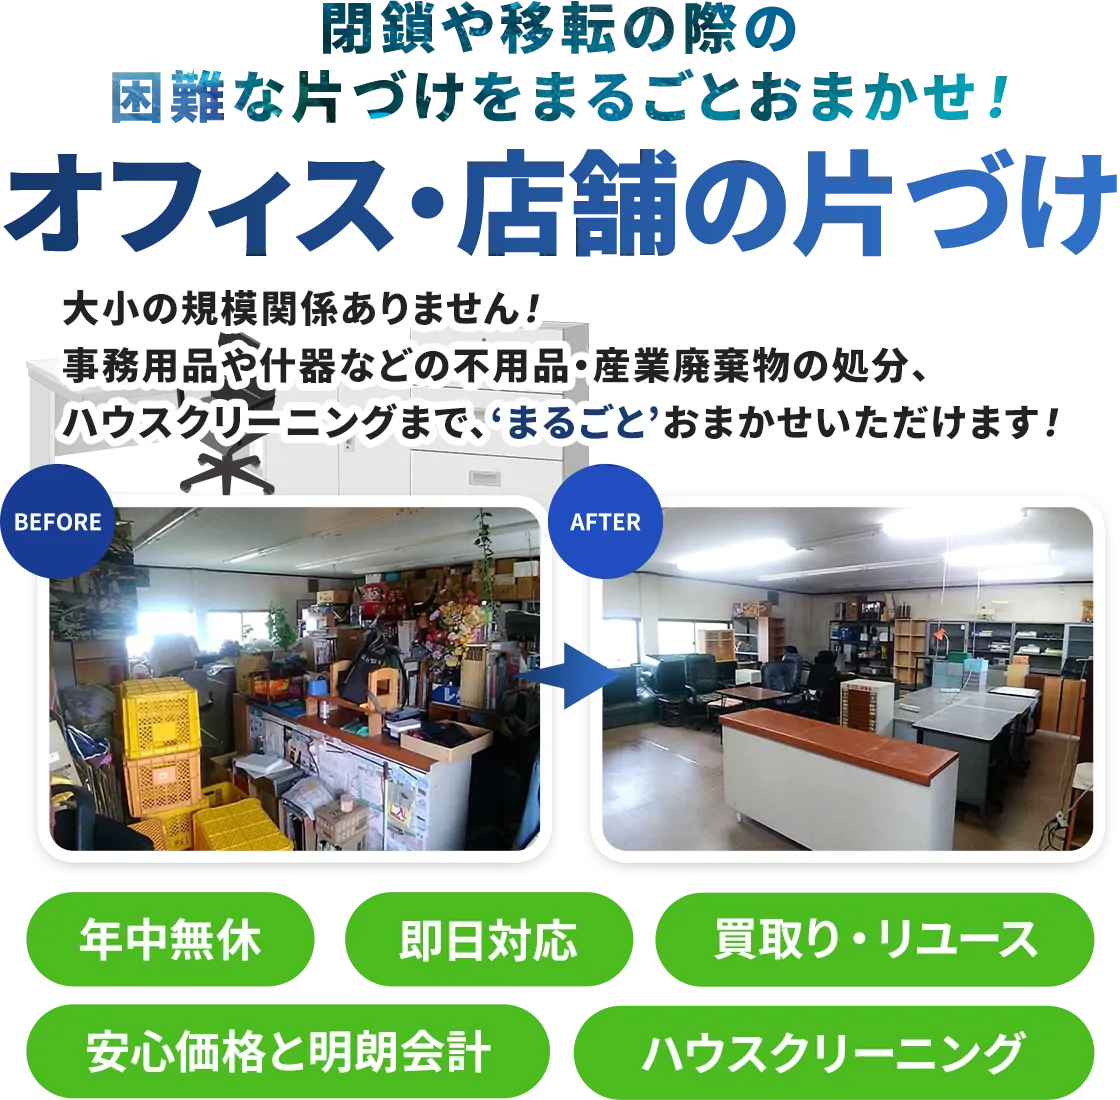 お家片づけ・不用品整理・遺品整理・生前整理｜愛知県一宮市のクリーン138のオフィス・店舗（飲食店など）の片づけ